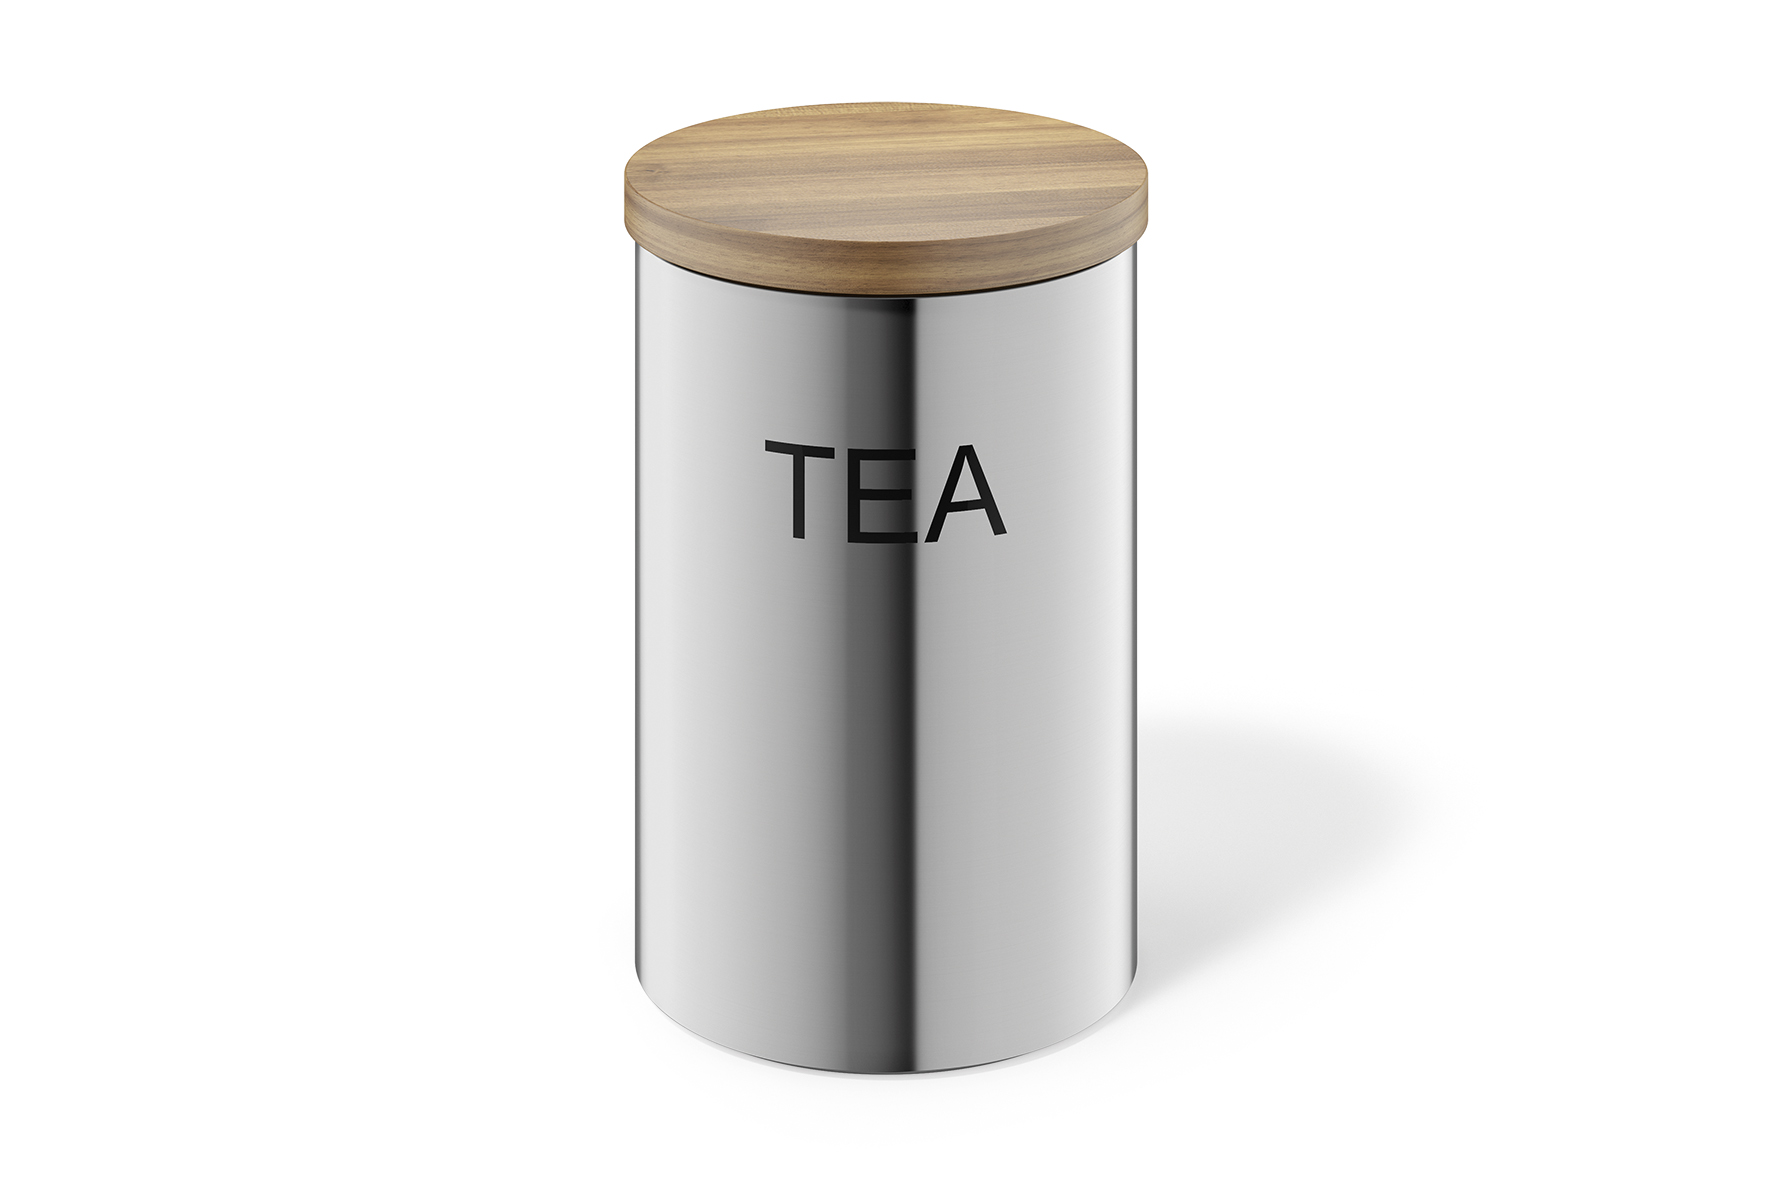 Банка для хранения чая. Баночки для чая. Емкости для хранения чая и кофе. Большая емкость для хранения чая.